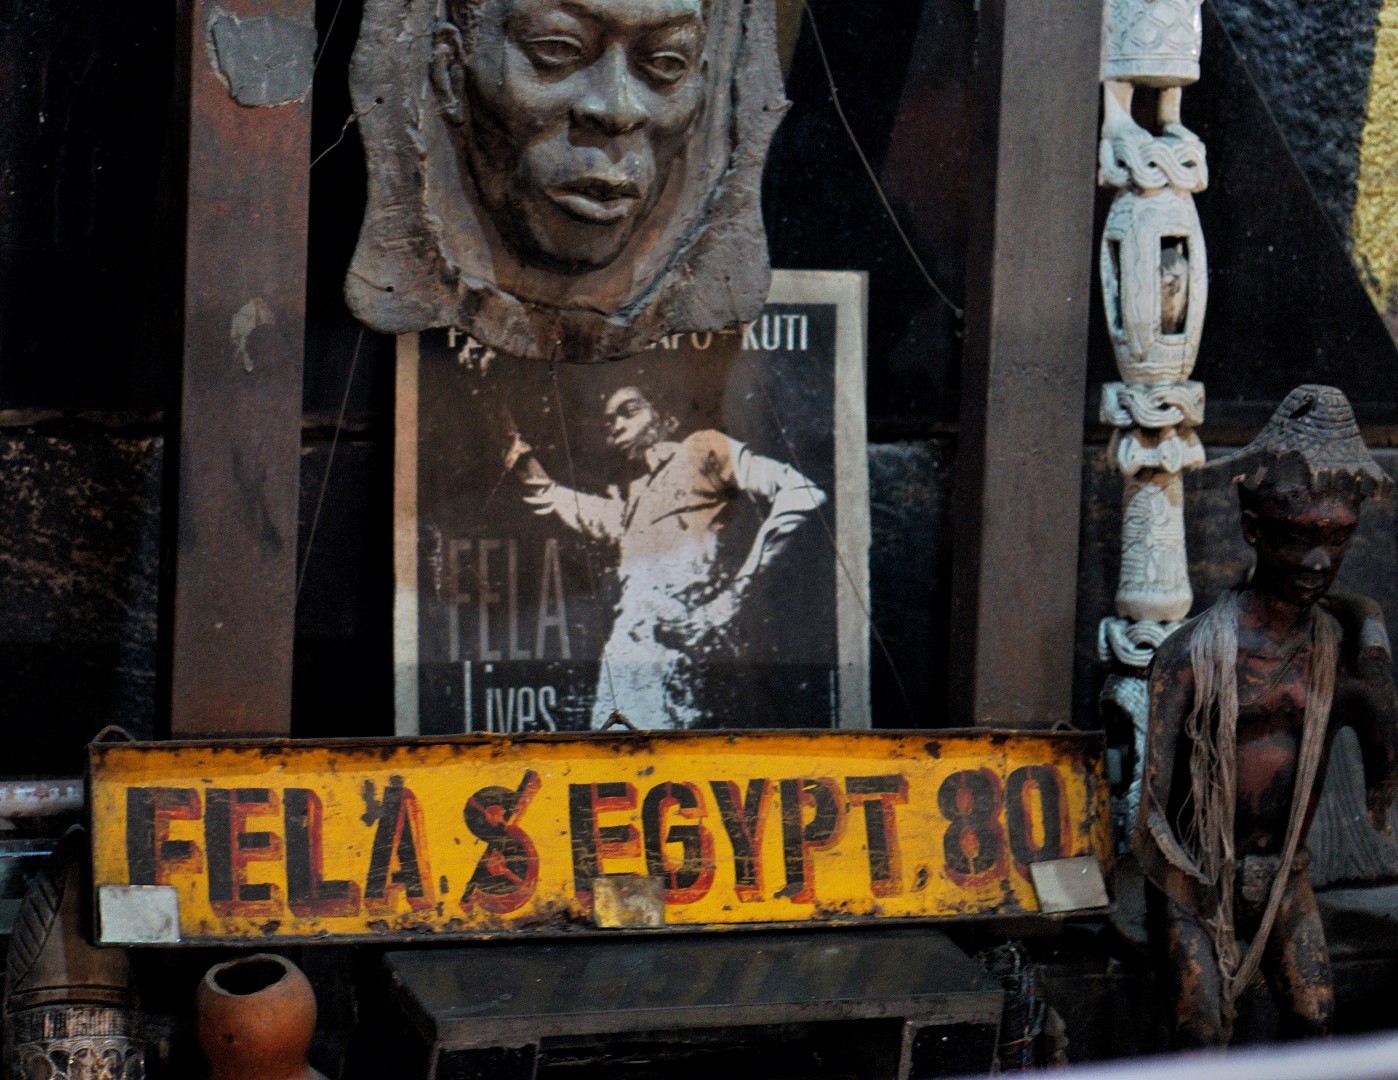 Picture of Fela at fela's shrine